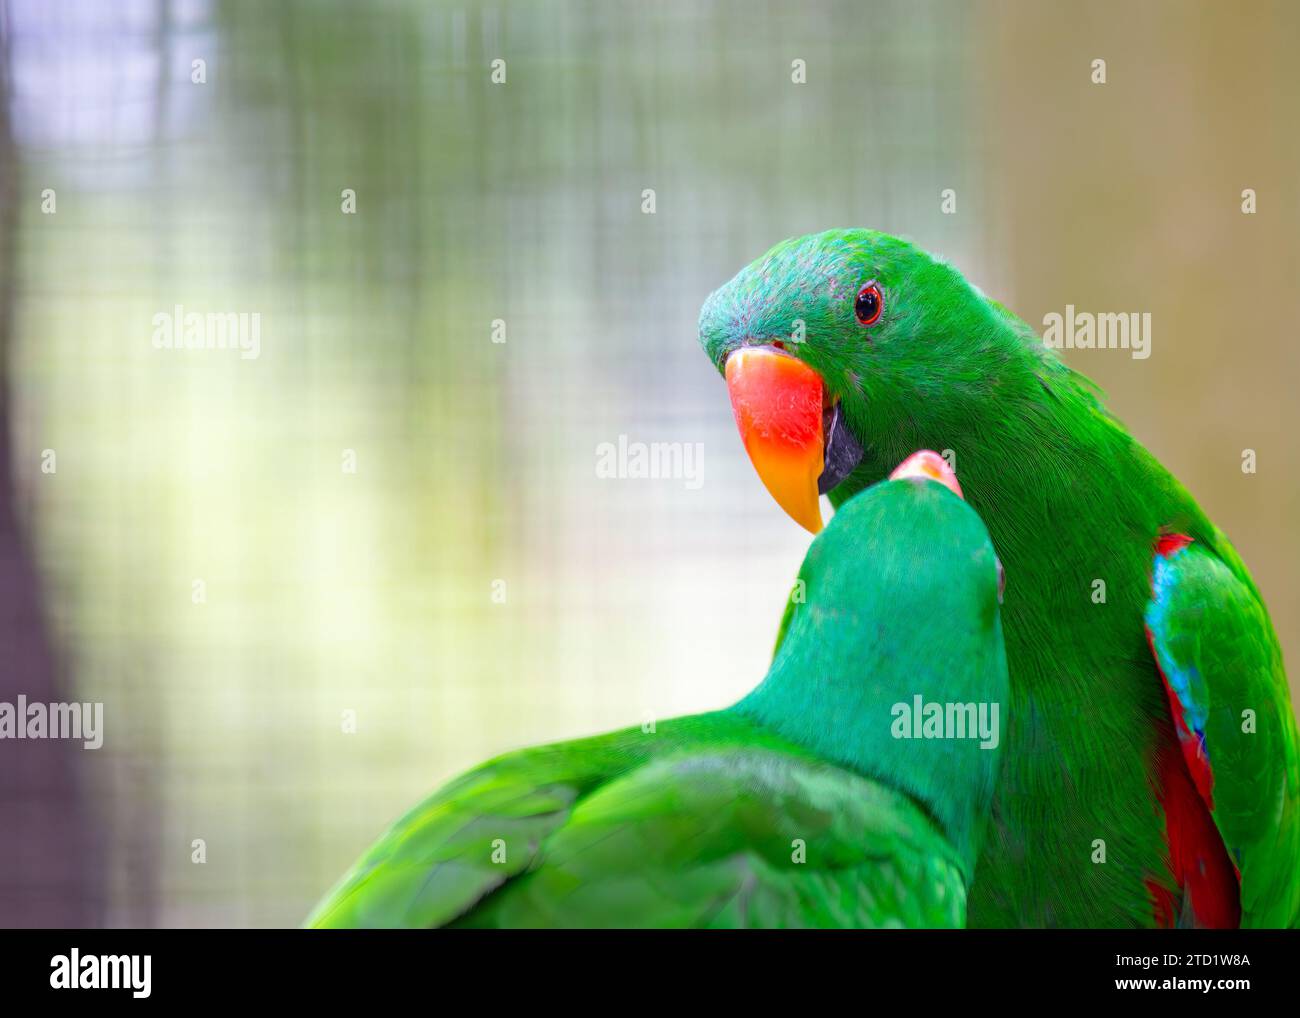 Lo splendente Eclectus Parrot (Eclectus roratus), originario delle foreste pluviali dell'Oceania, affascina con il suo vivace piumaggio. Questo intelligente e ch Foto Stock